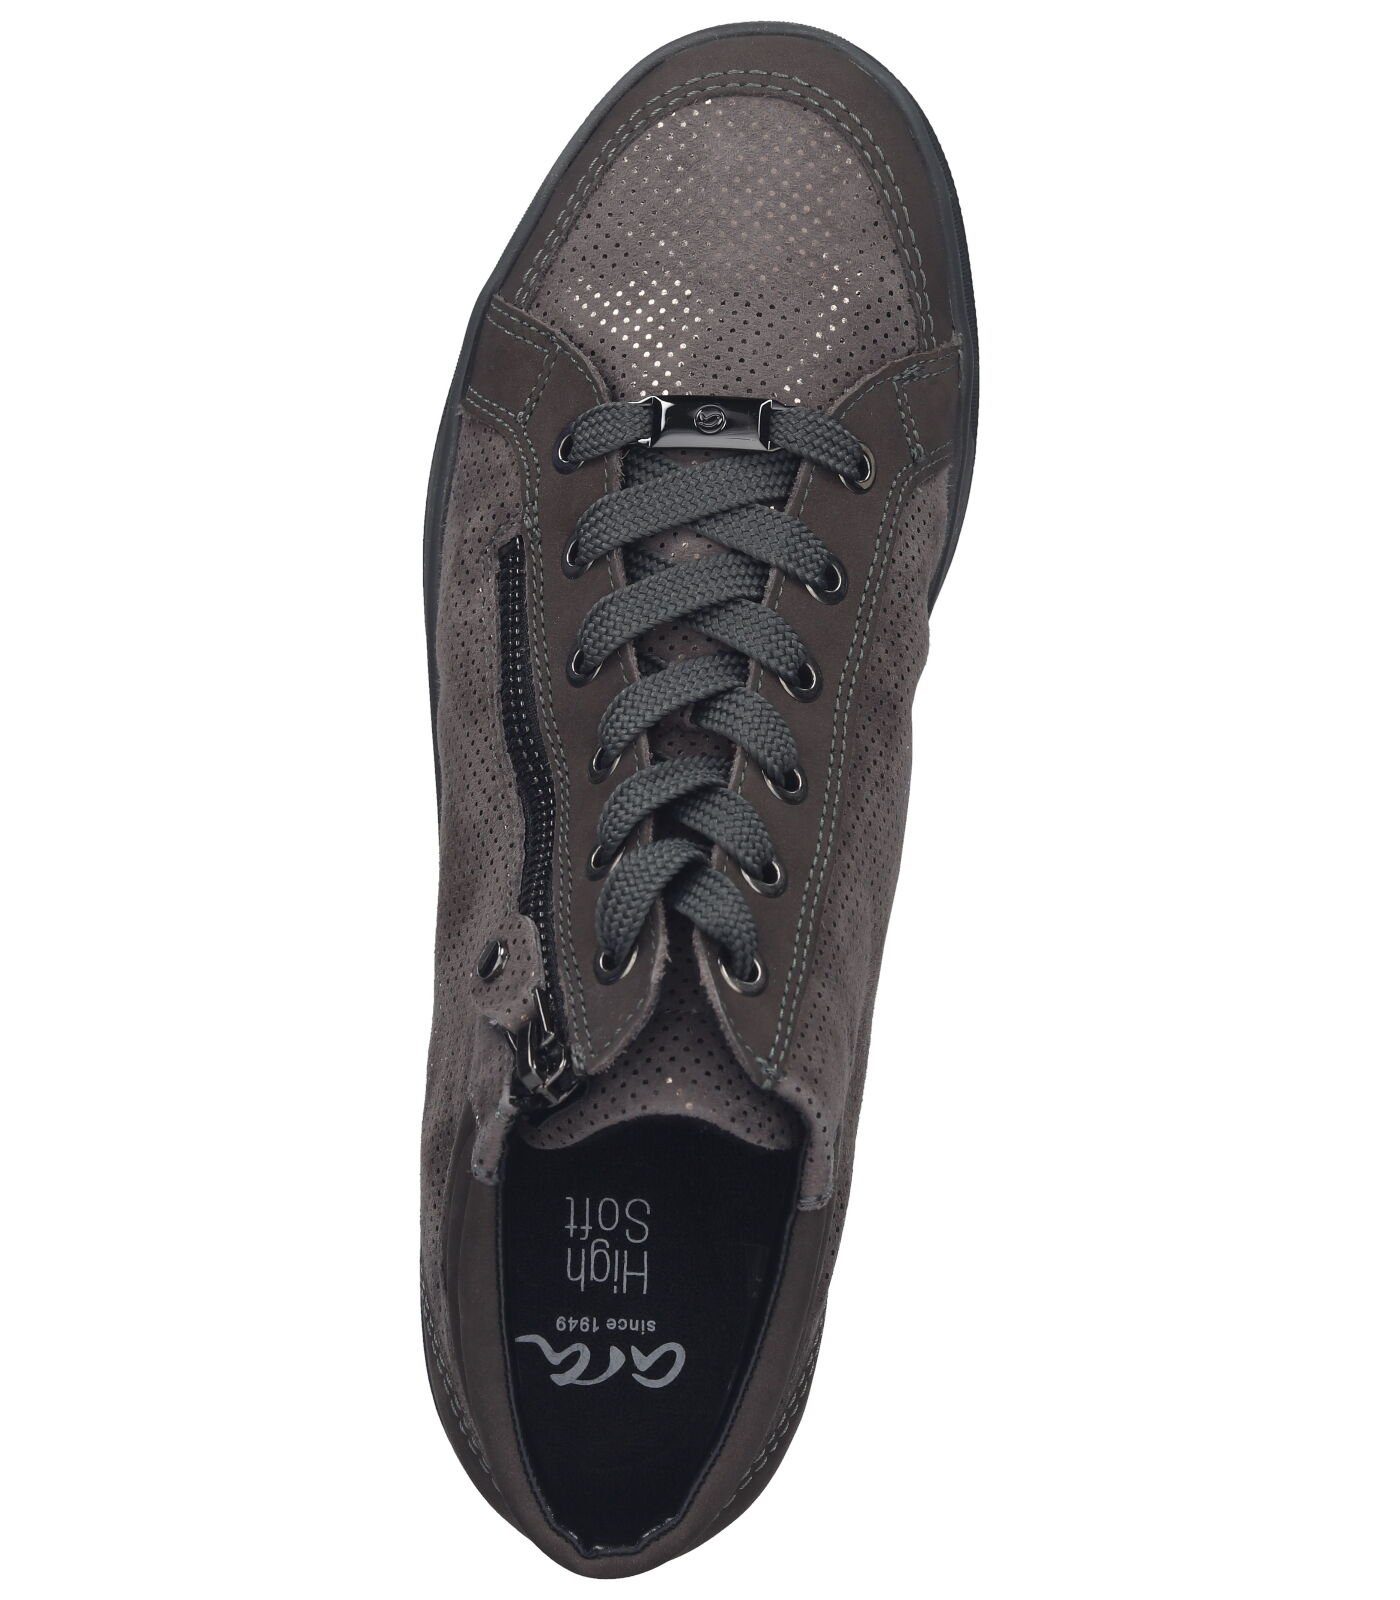 Ara Nubukleder/Textil 049648 Sneaker grau Sneaker